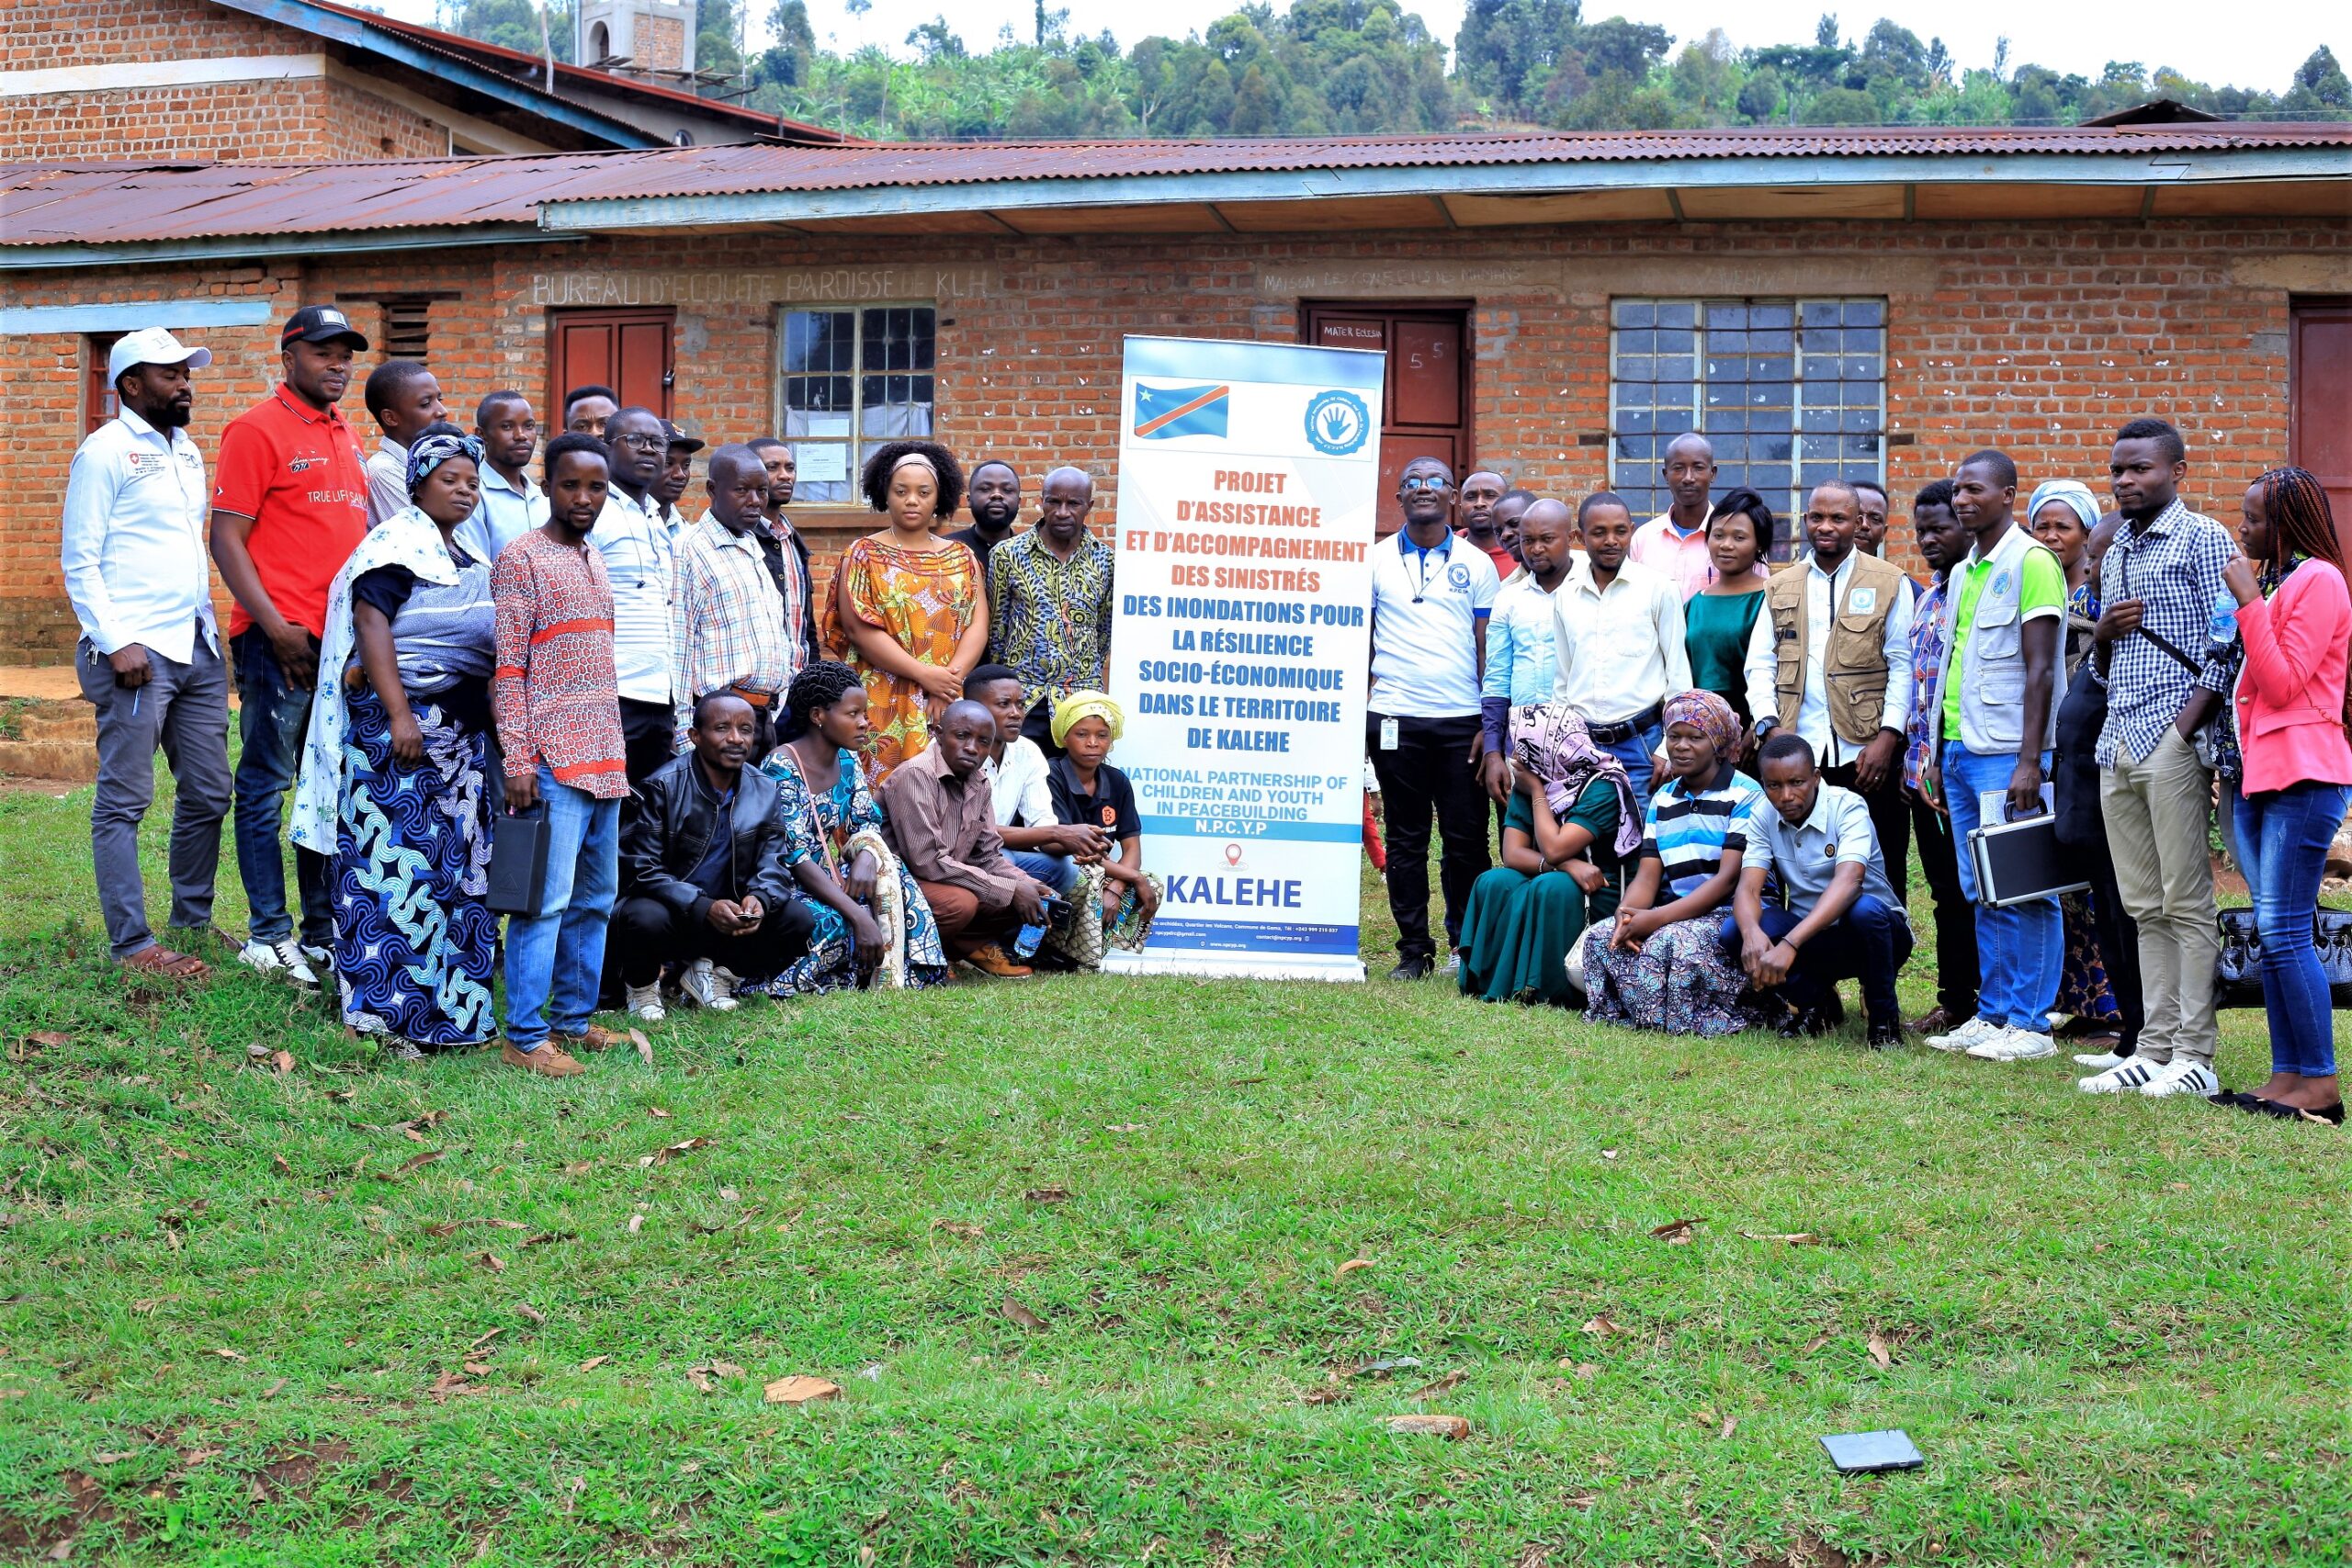 Kalehe: Lancement du Projet d’assistance et accompagnement des sinistrés des inondations pour la résilience socio-économique